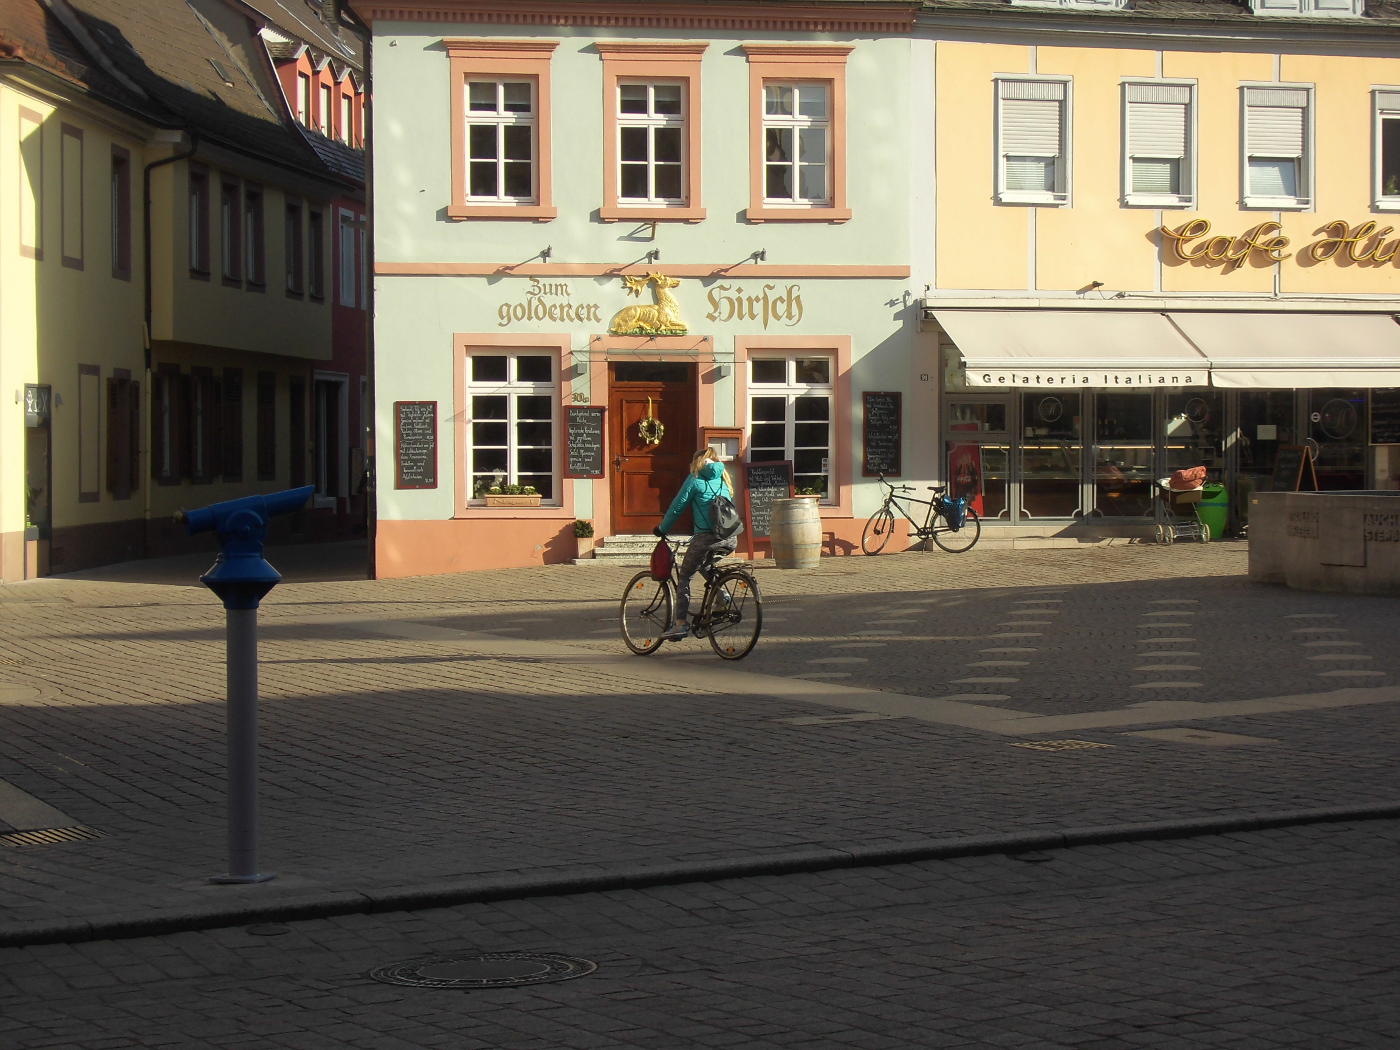 Speyer, Bruchsal: keine Zeugen Jehovas